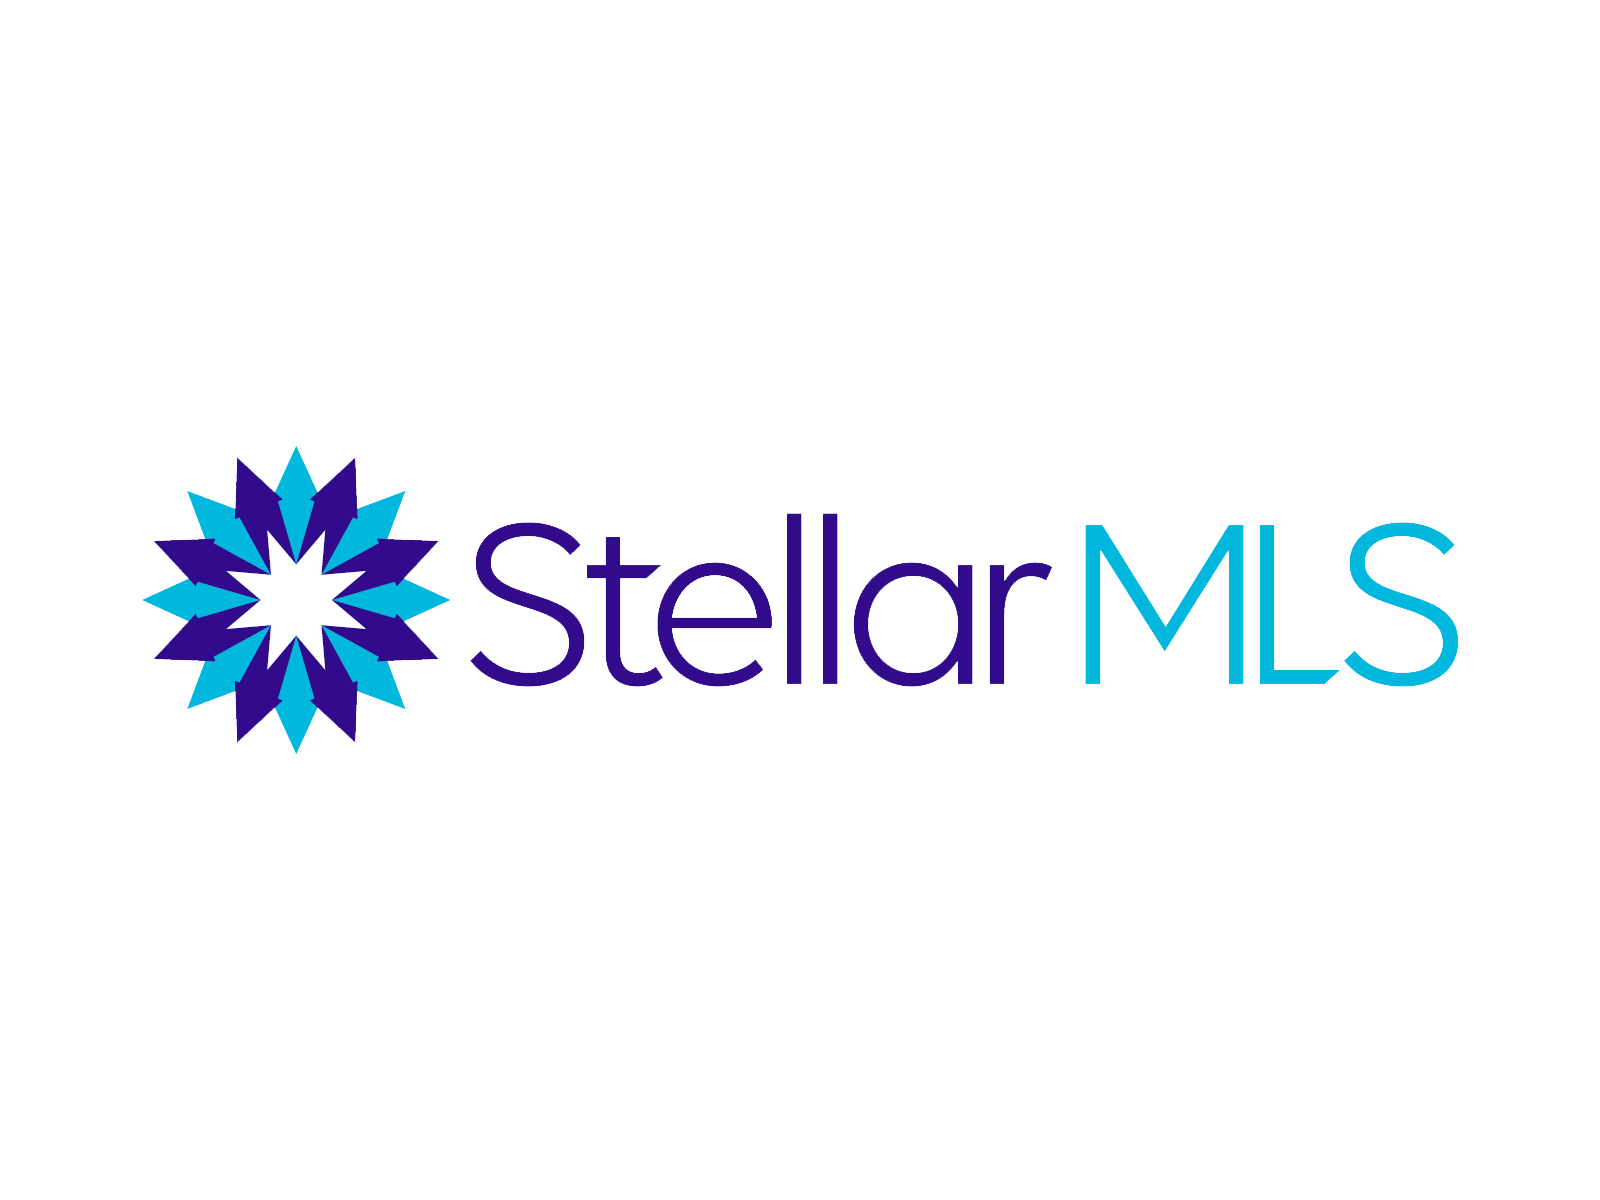 stellar mls